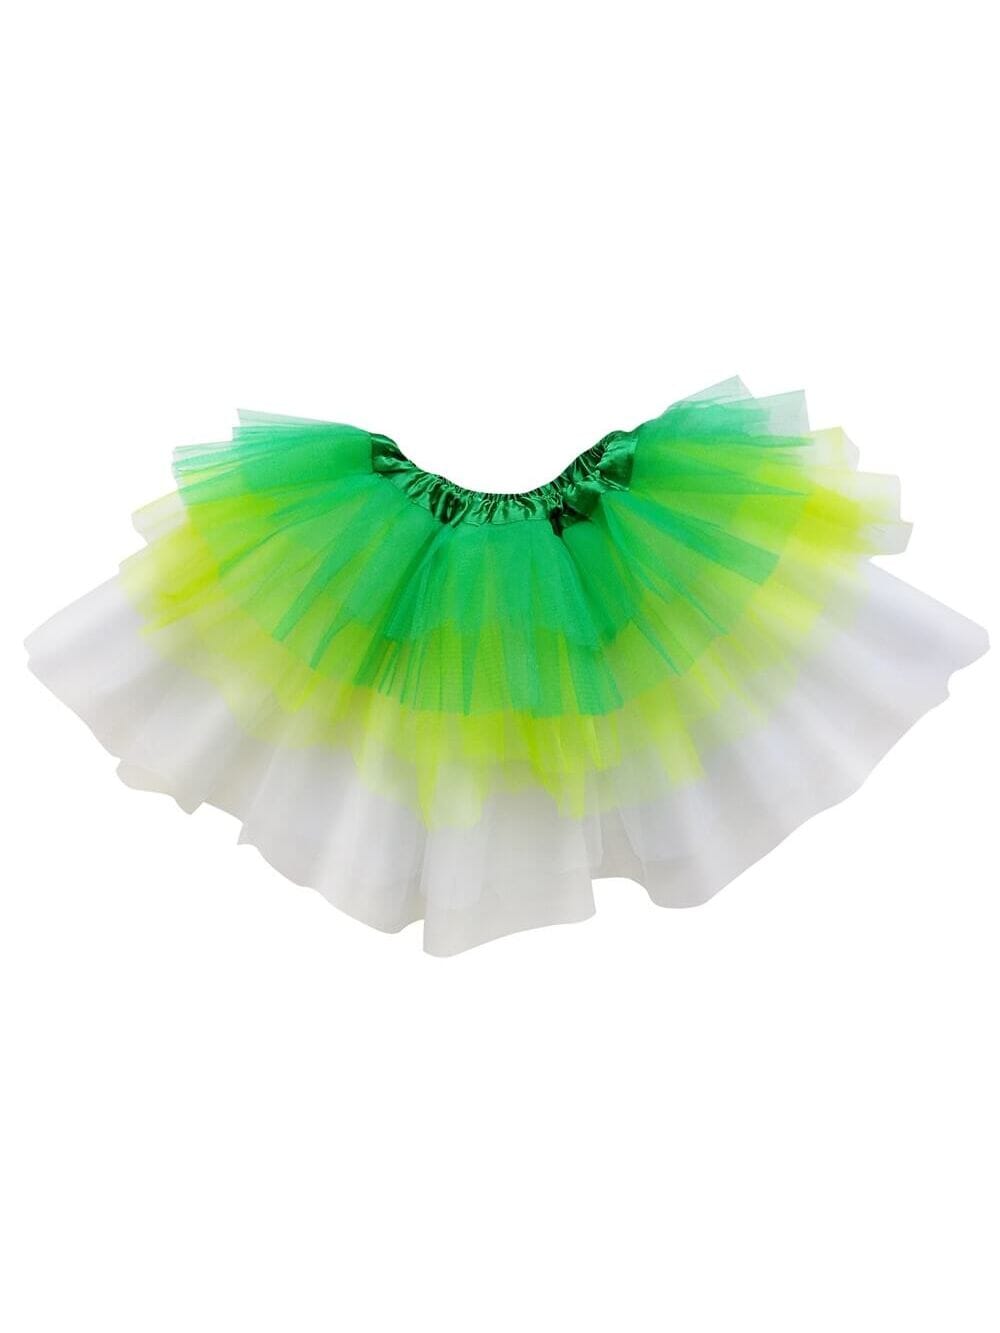 Green, Lime, White 6 Layer Tutu Skirt Costume for Girls, Women, Plus - Sydney So Sweet